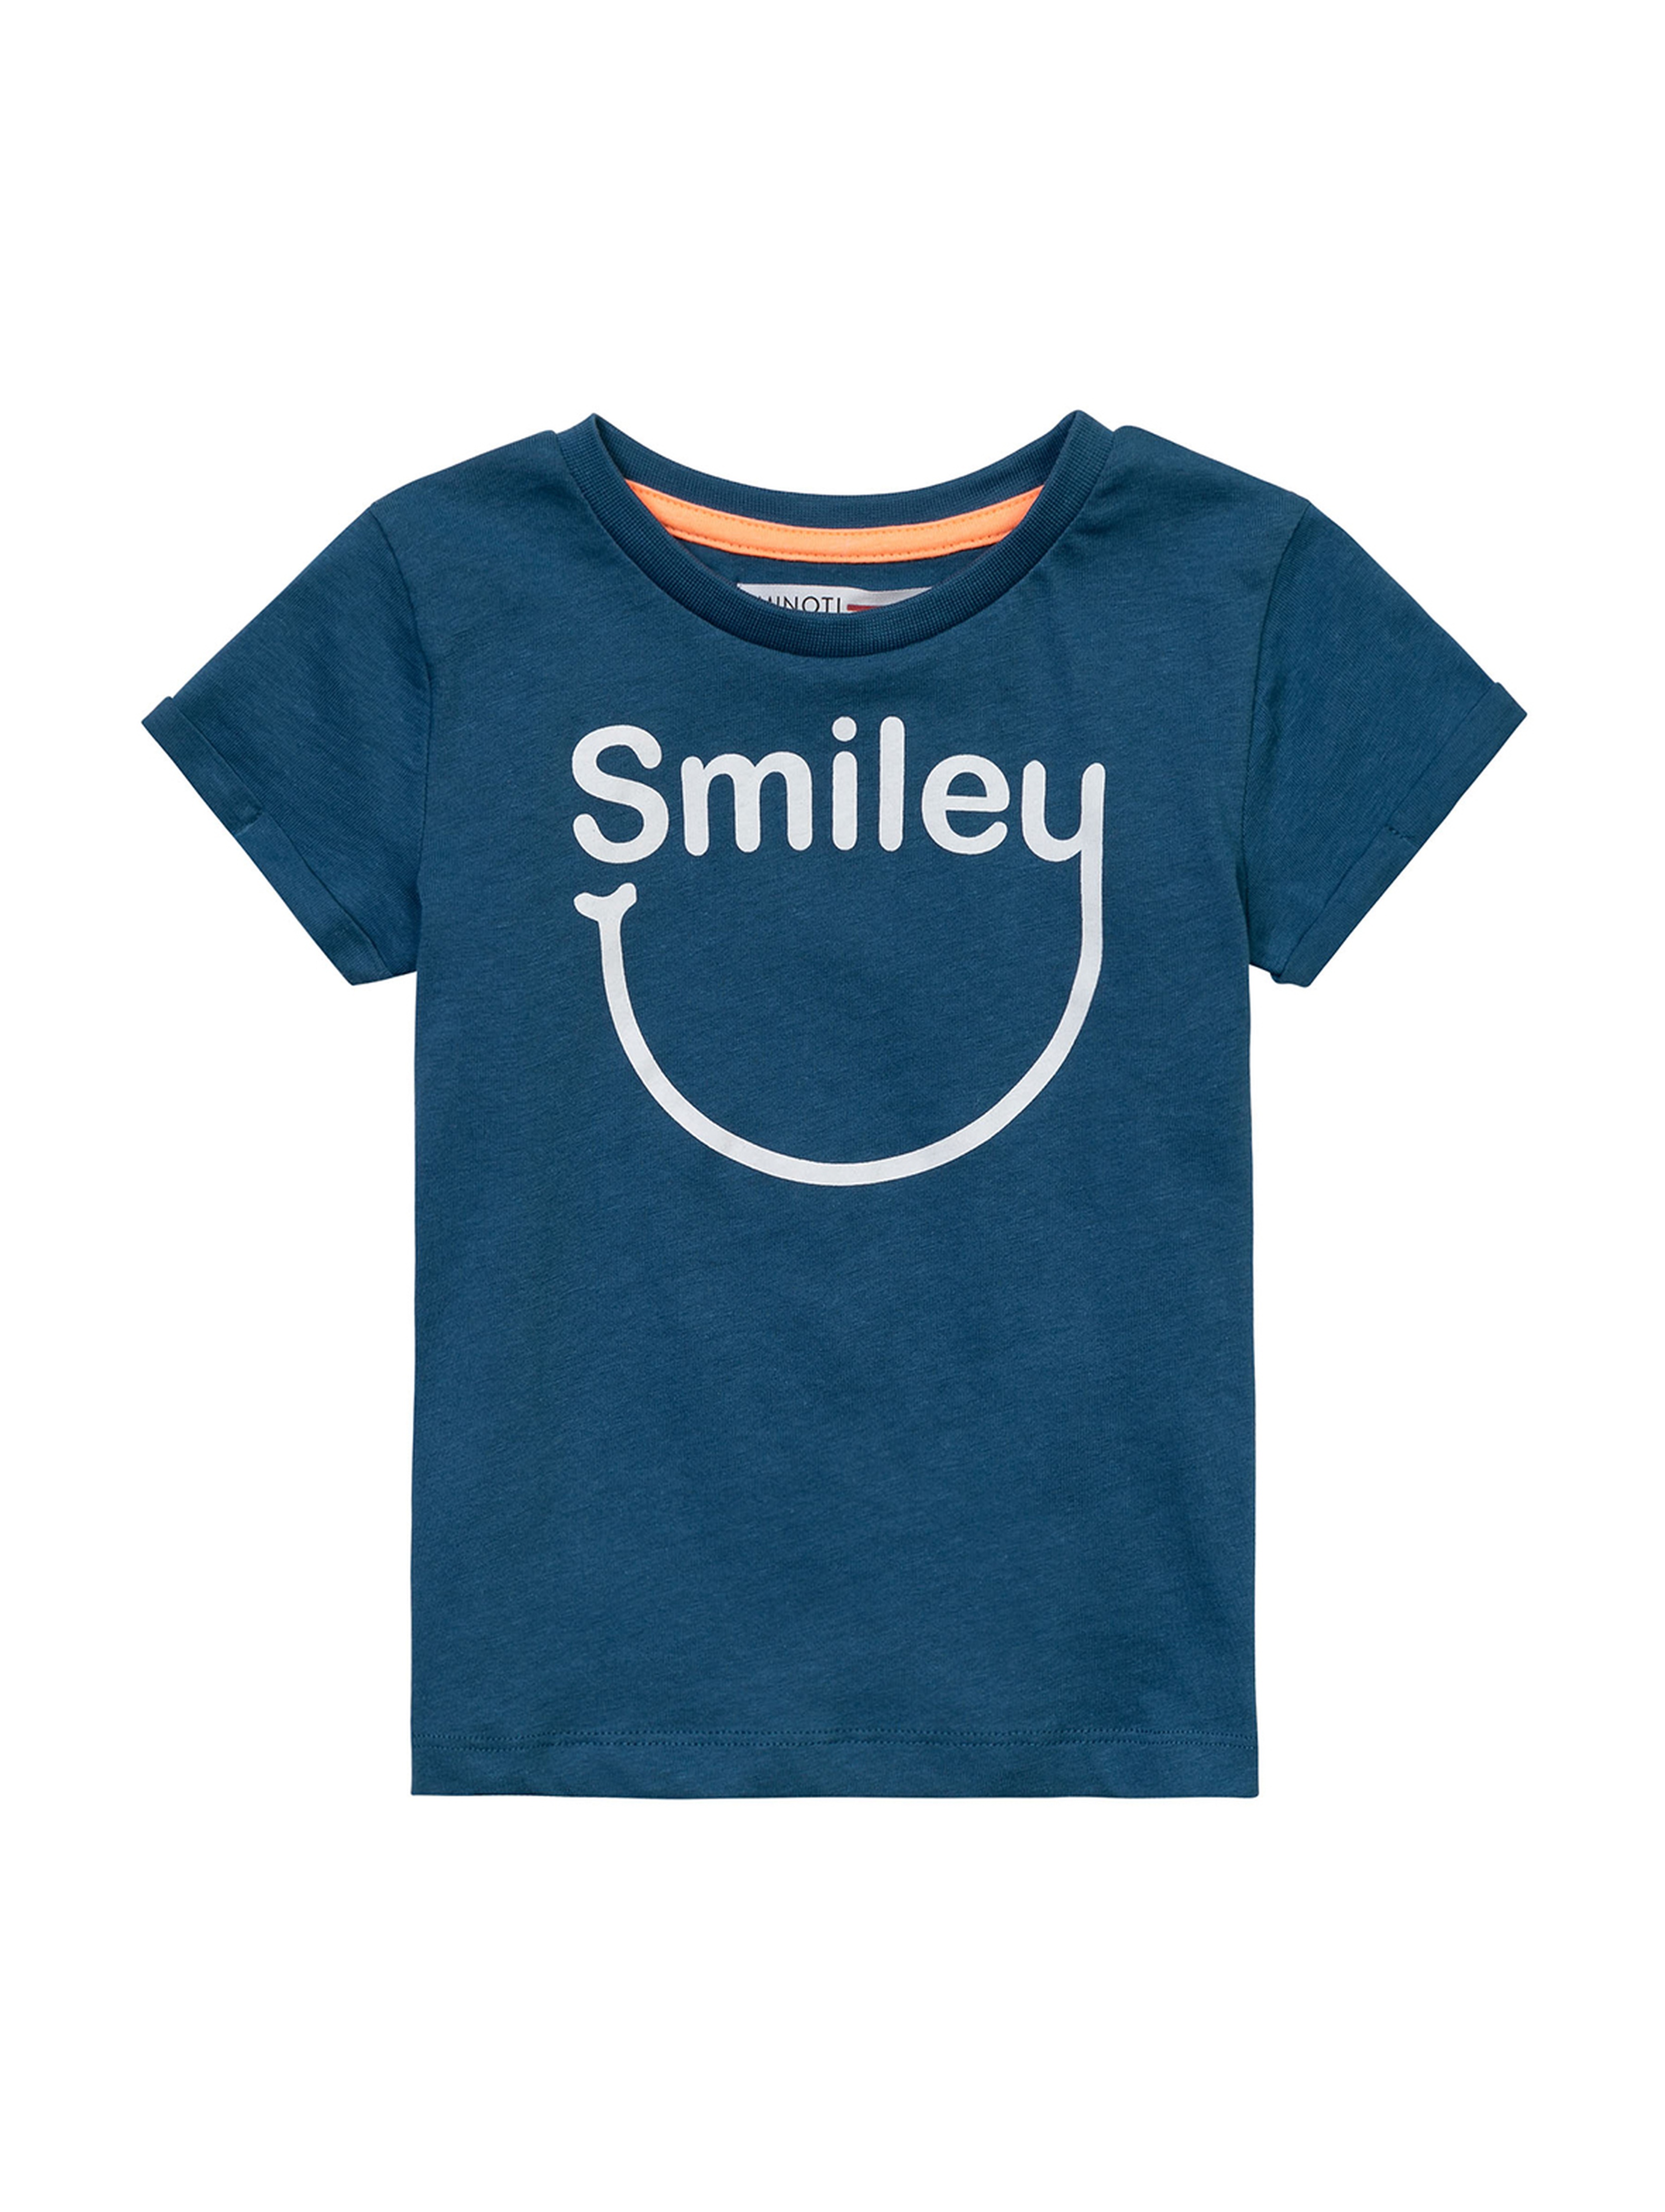 Niebieski t-shirt dla niemowlaka z napisem